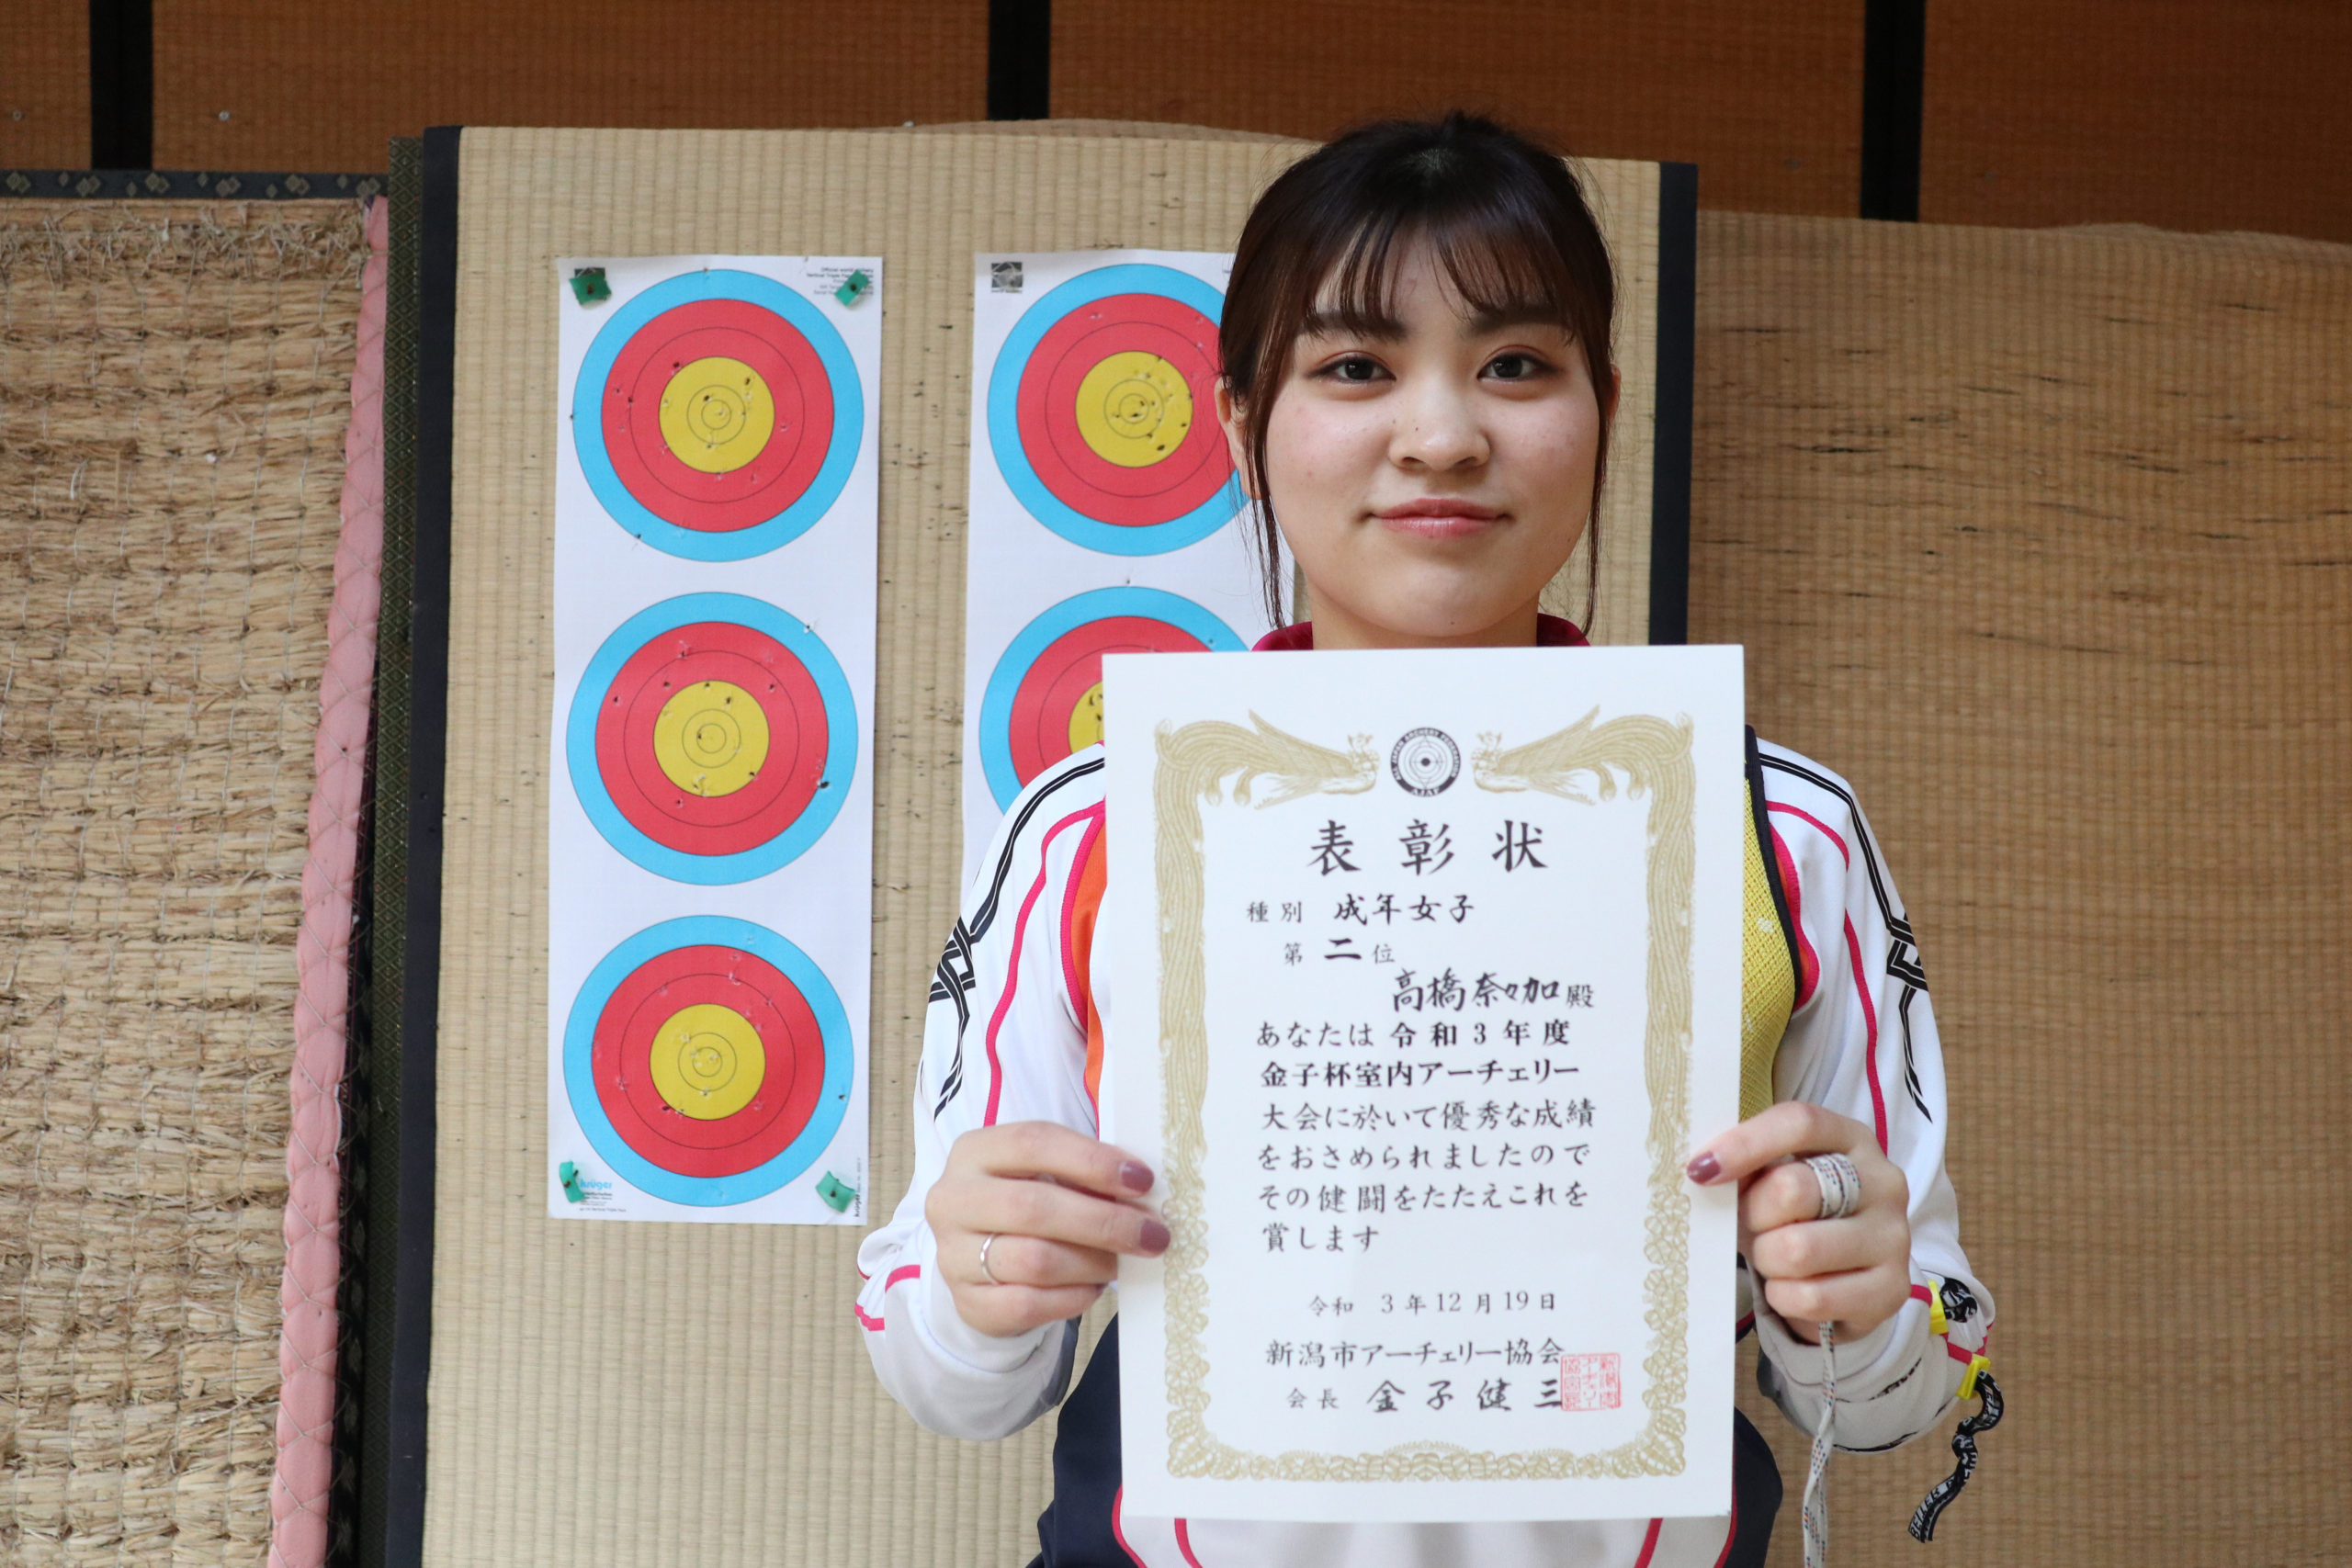 【敬和スポーツ】第10回金子杯室内アーチェリー大会で本学髙橋奈々加さんが成年女子の部準優勝しました